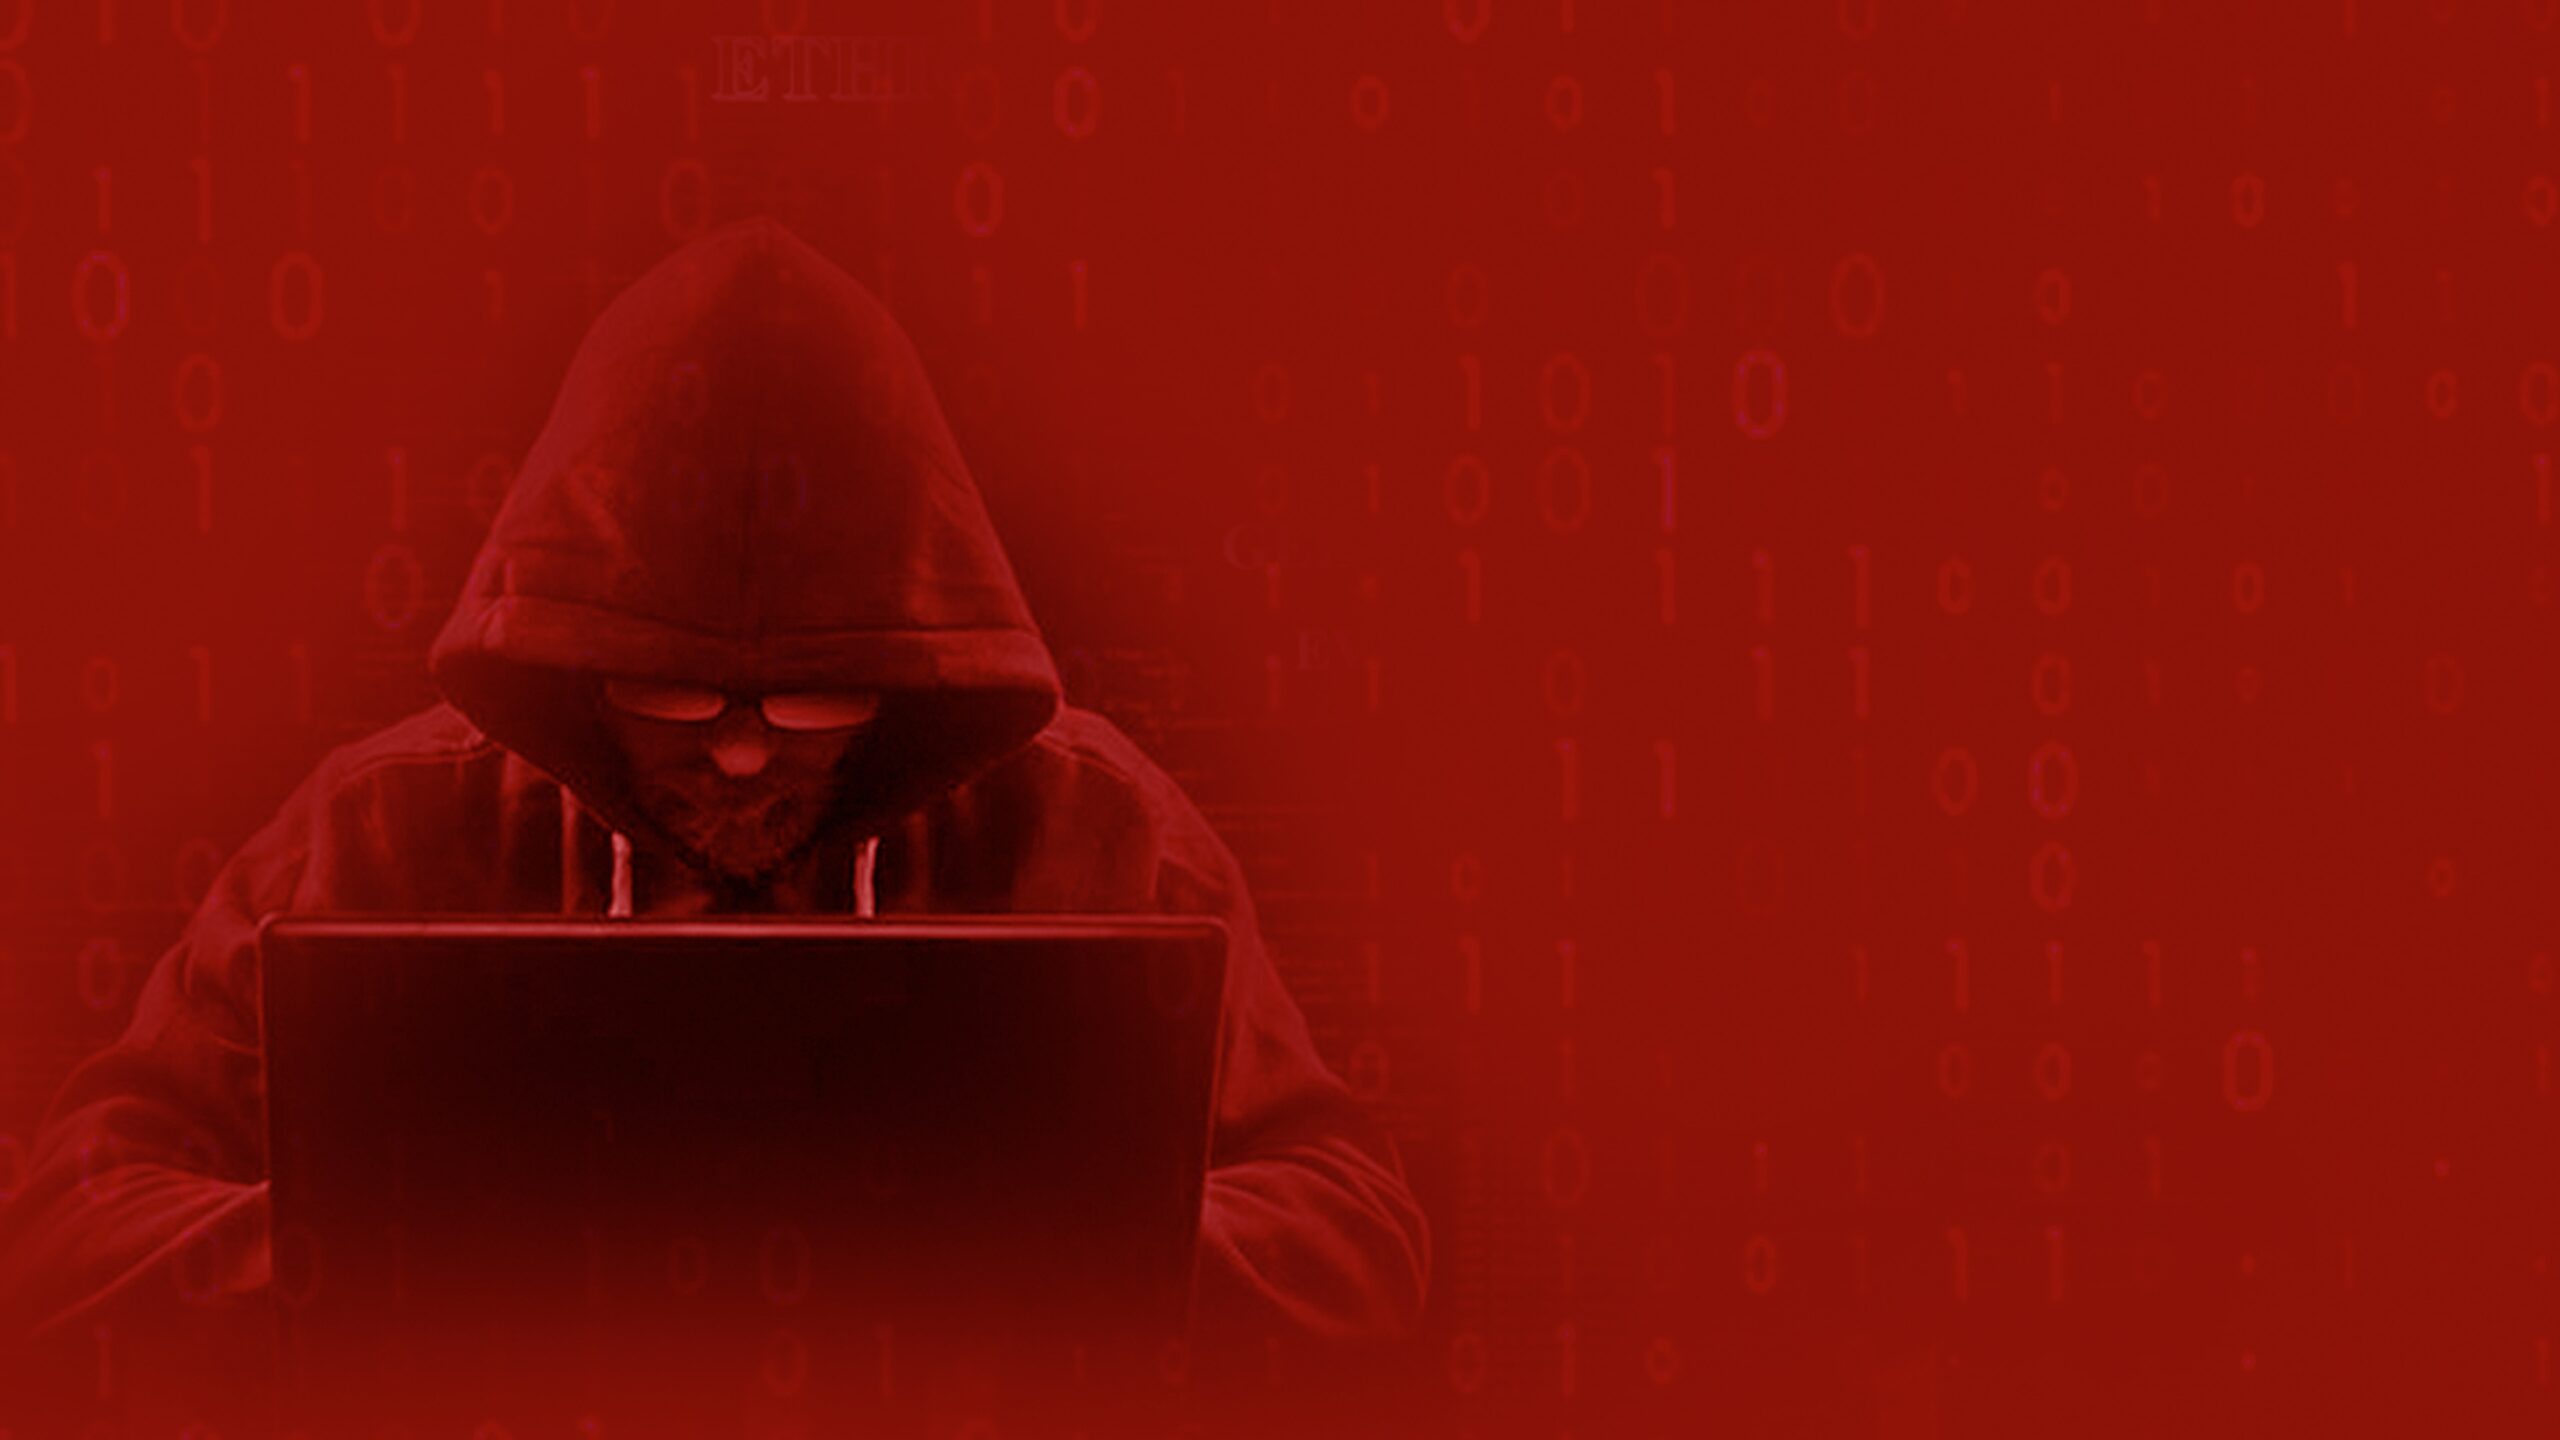 Más allá de las ofertas clandestinas estándar, como el malware y los kits de explotación, los ciberdelincuentes también aprovechan